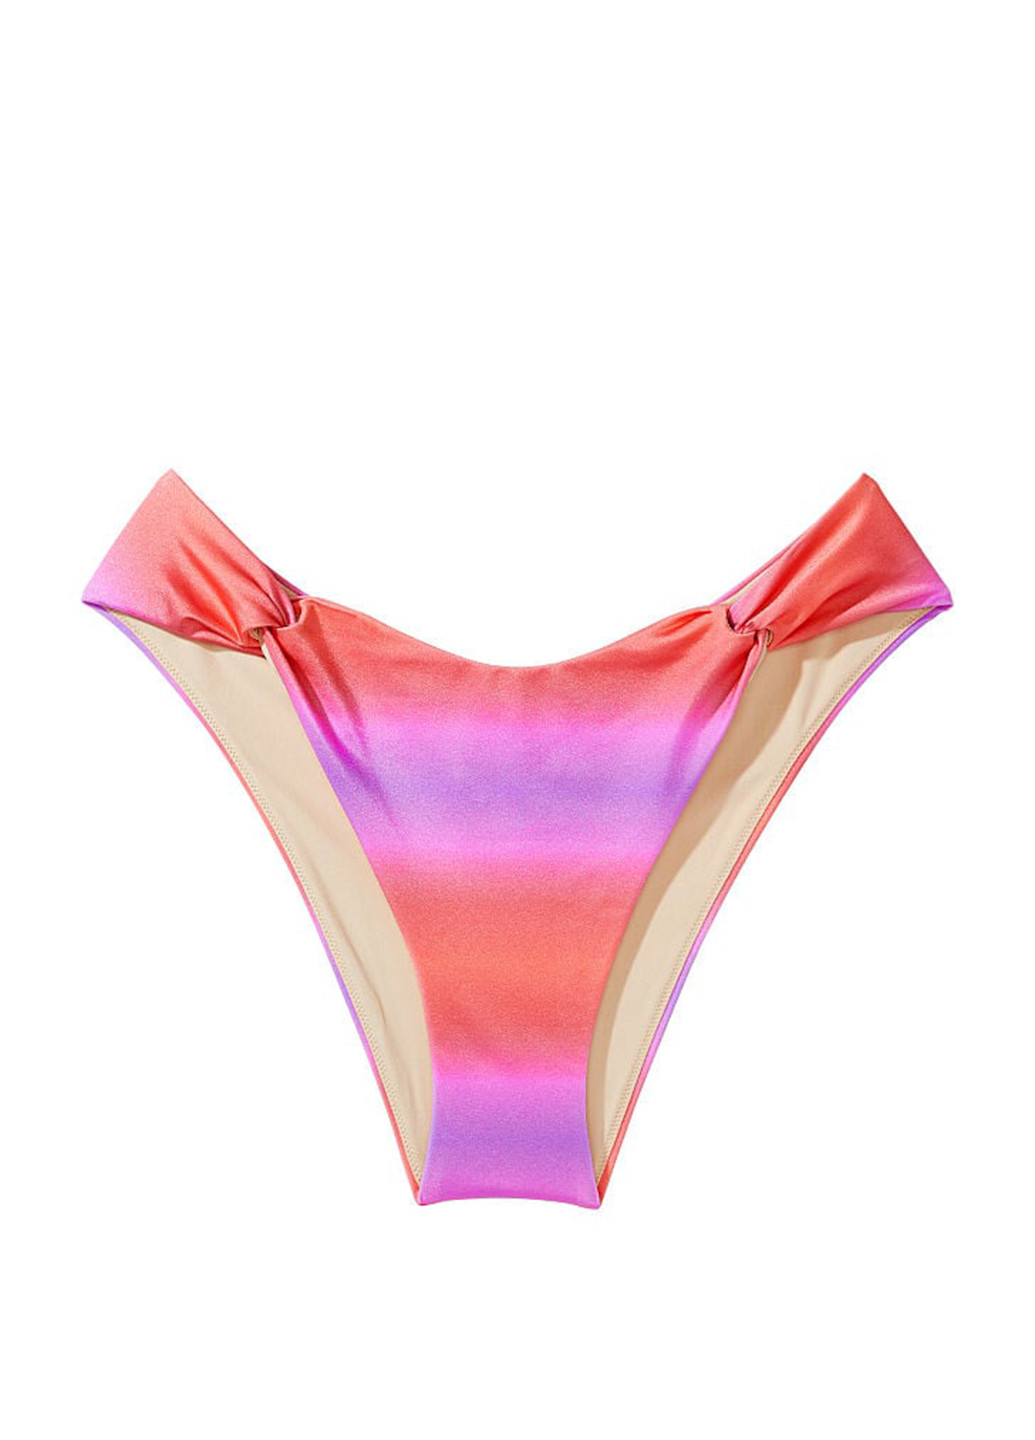 Рожевий літній купальник (ліф, труси) роздільний, бікіні Victoria's Secret